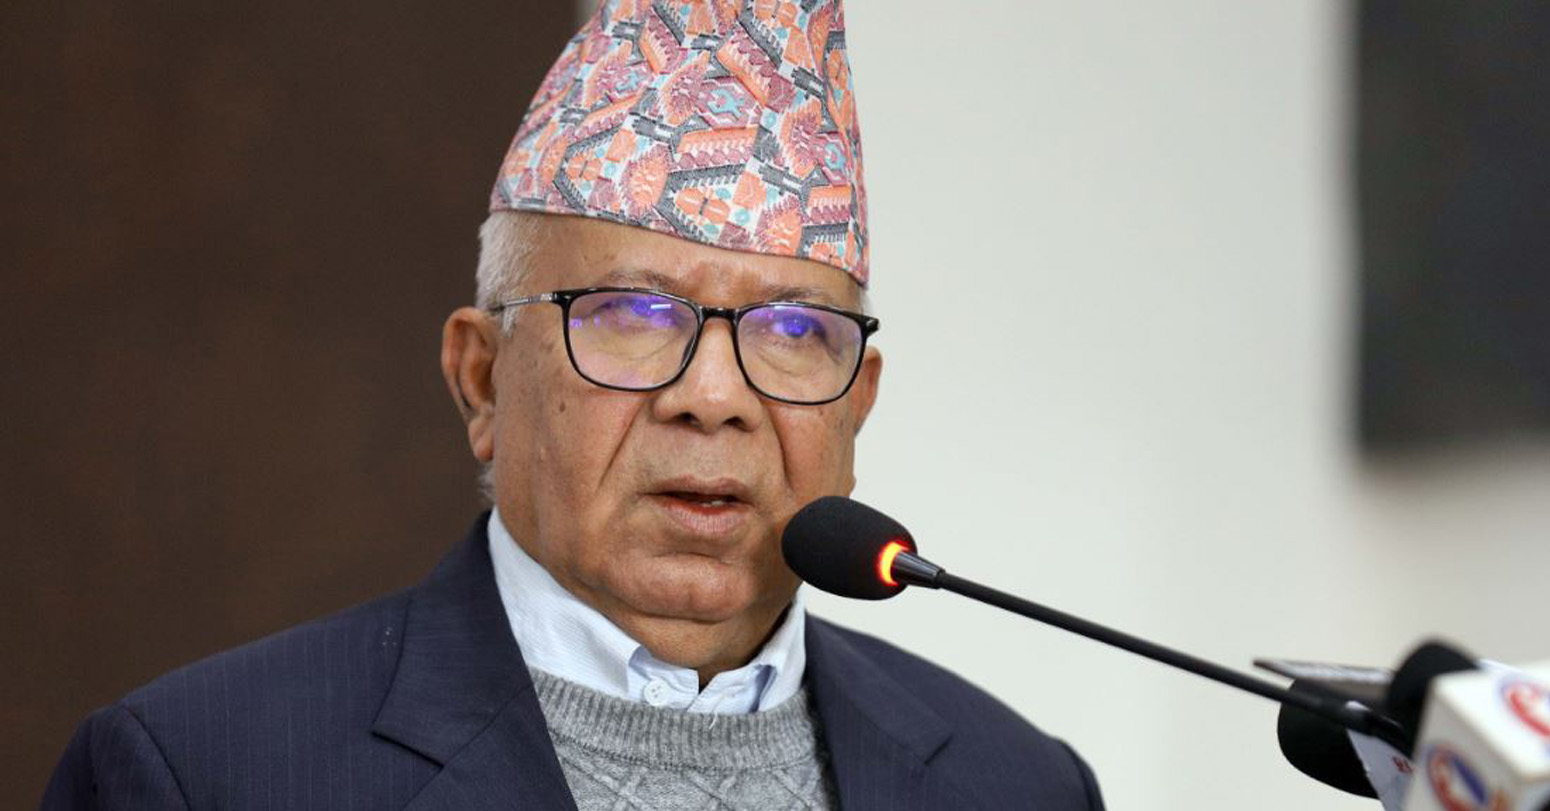 मुलुकको सङ्कट समाधान गर्न सैद्धान्तिक कार्यदिशा प्रष्ट हुनुपर्छ : अध्यक्ष नेपाल